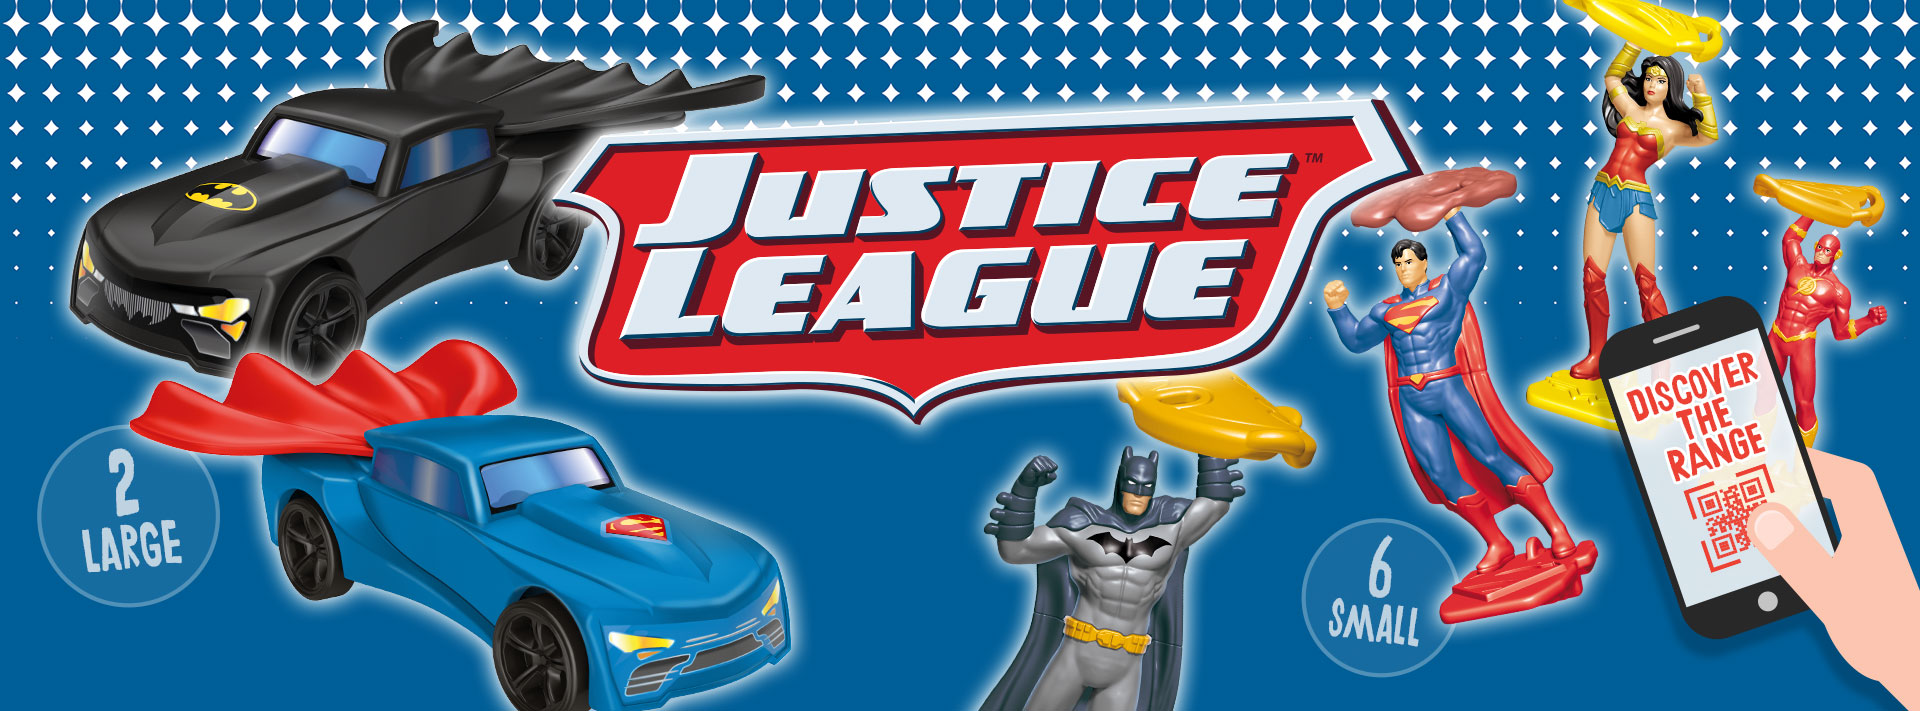 kinder joy justice league